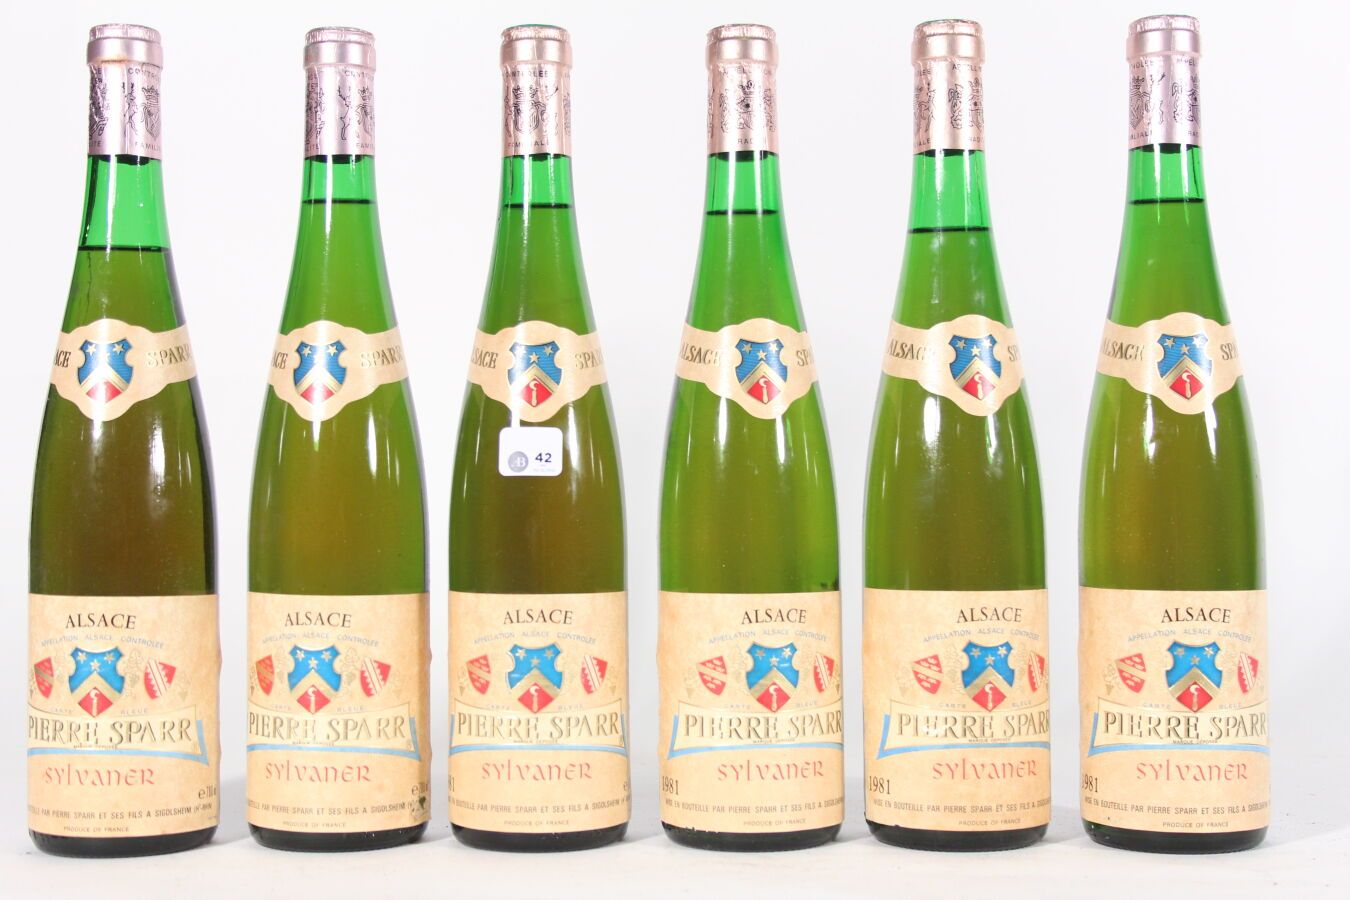 Null 1981 - Pierre Sparr
Alsace Sylvaner Bianco - 6 bottiglie